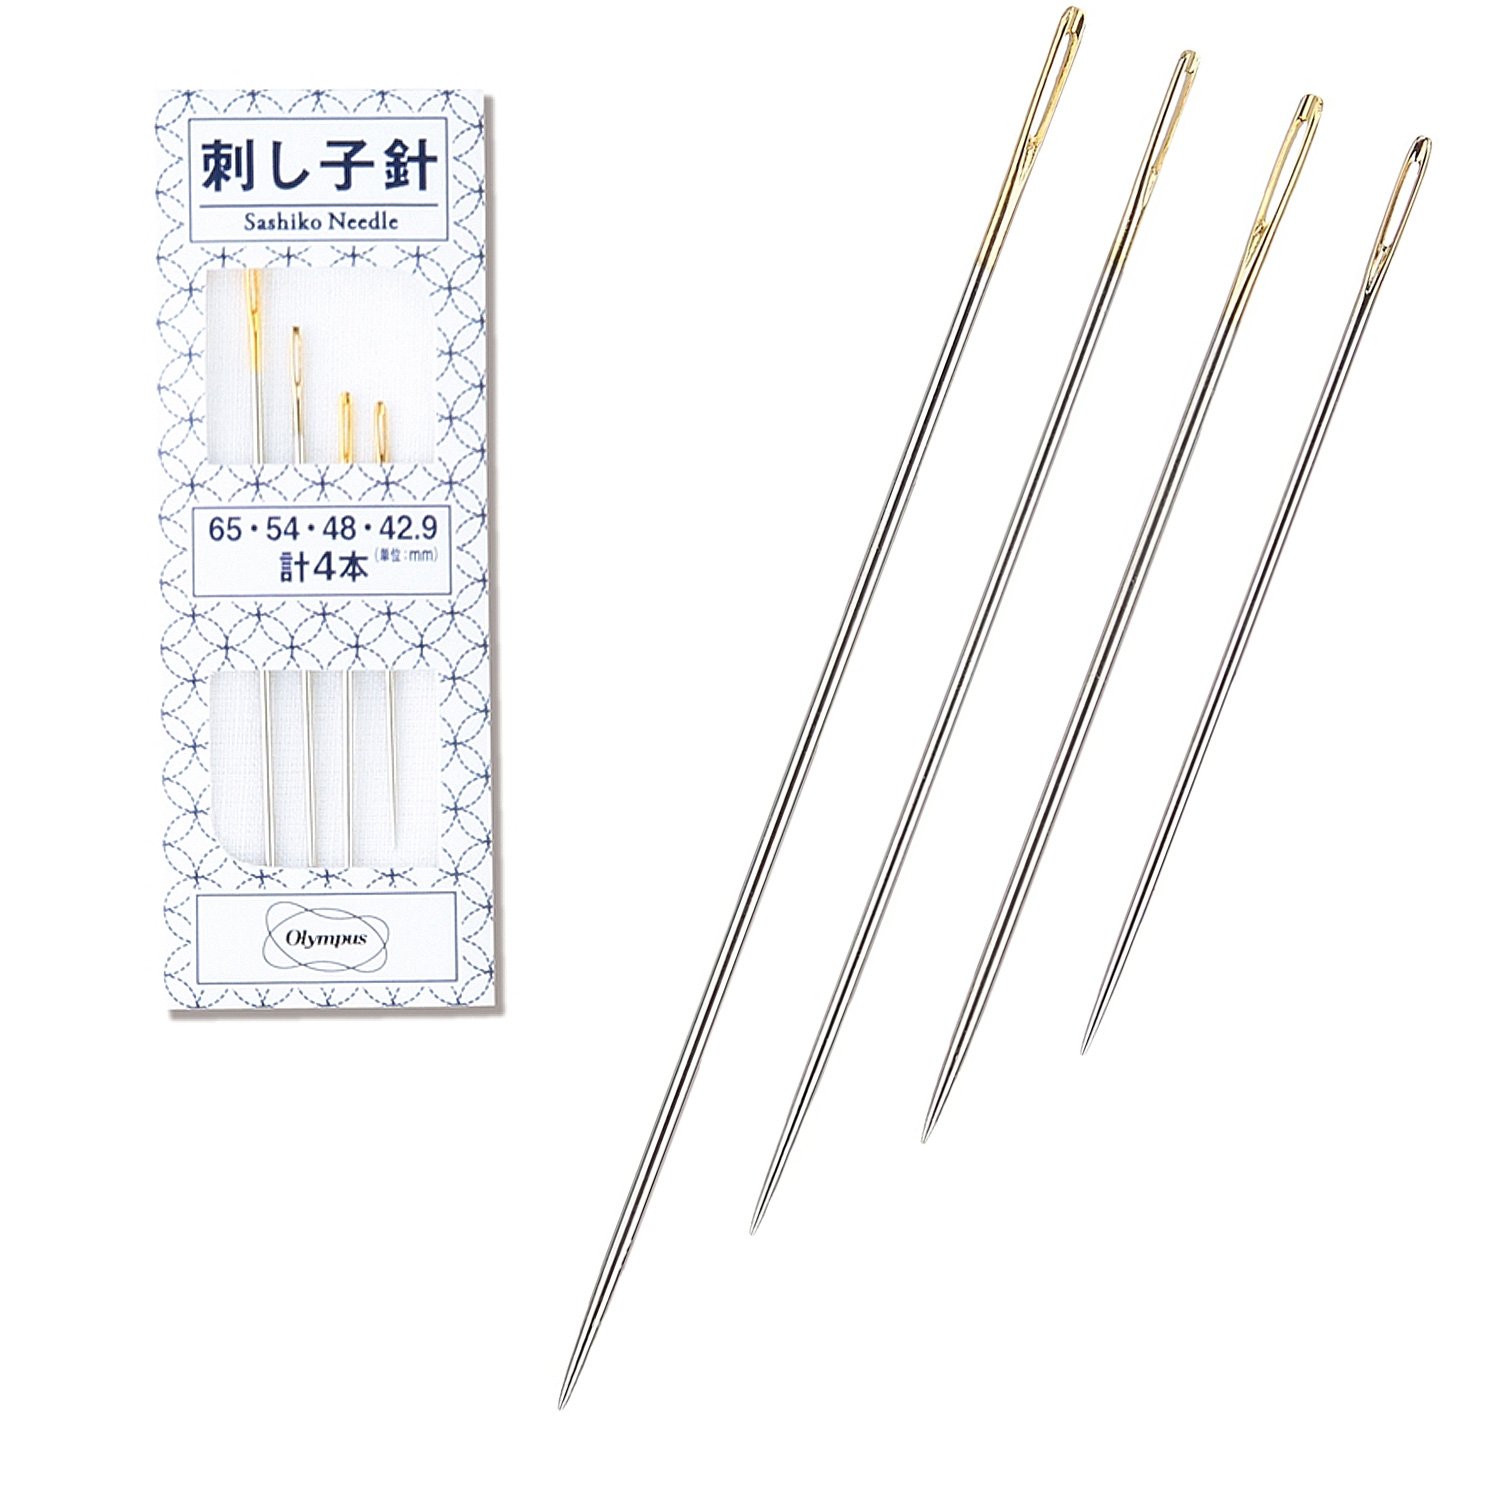 OLY30499 Sashiko Needle 4pcs (pack)